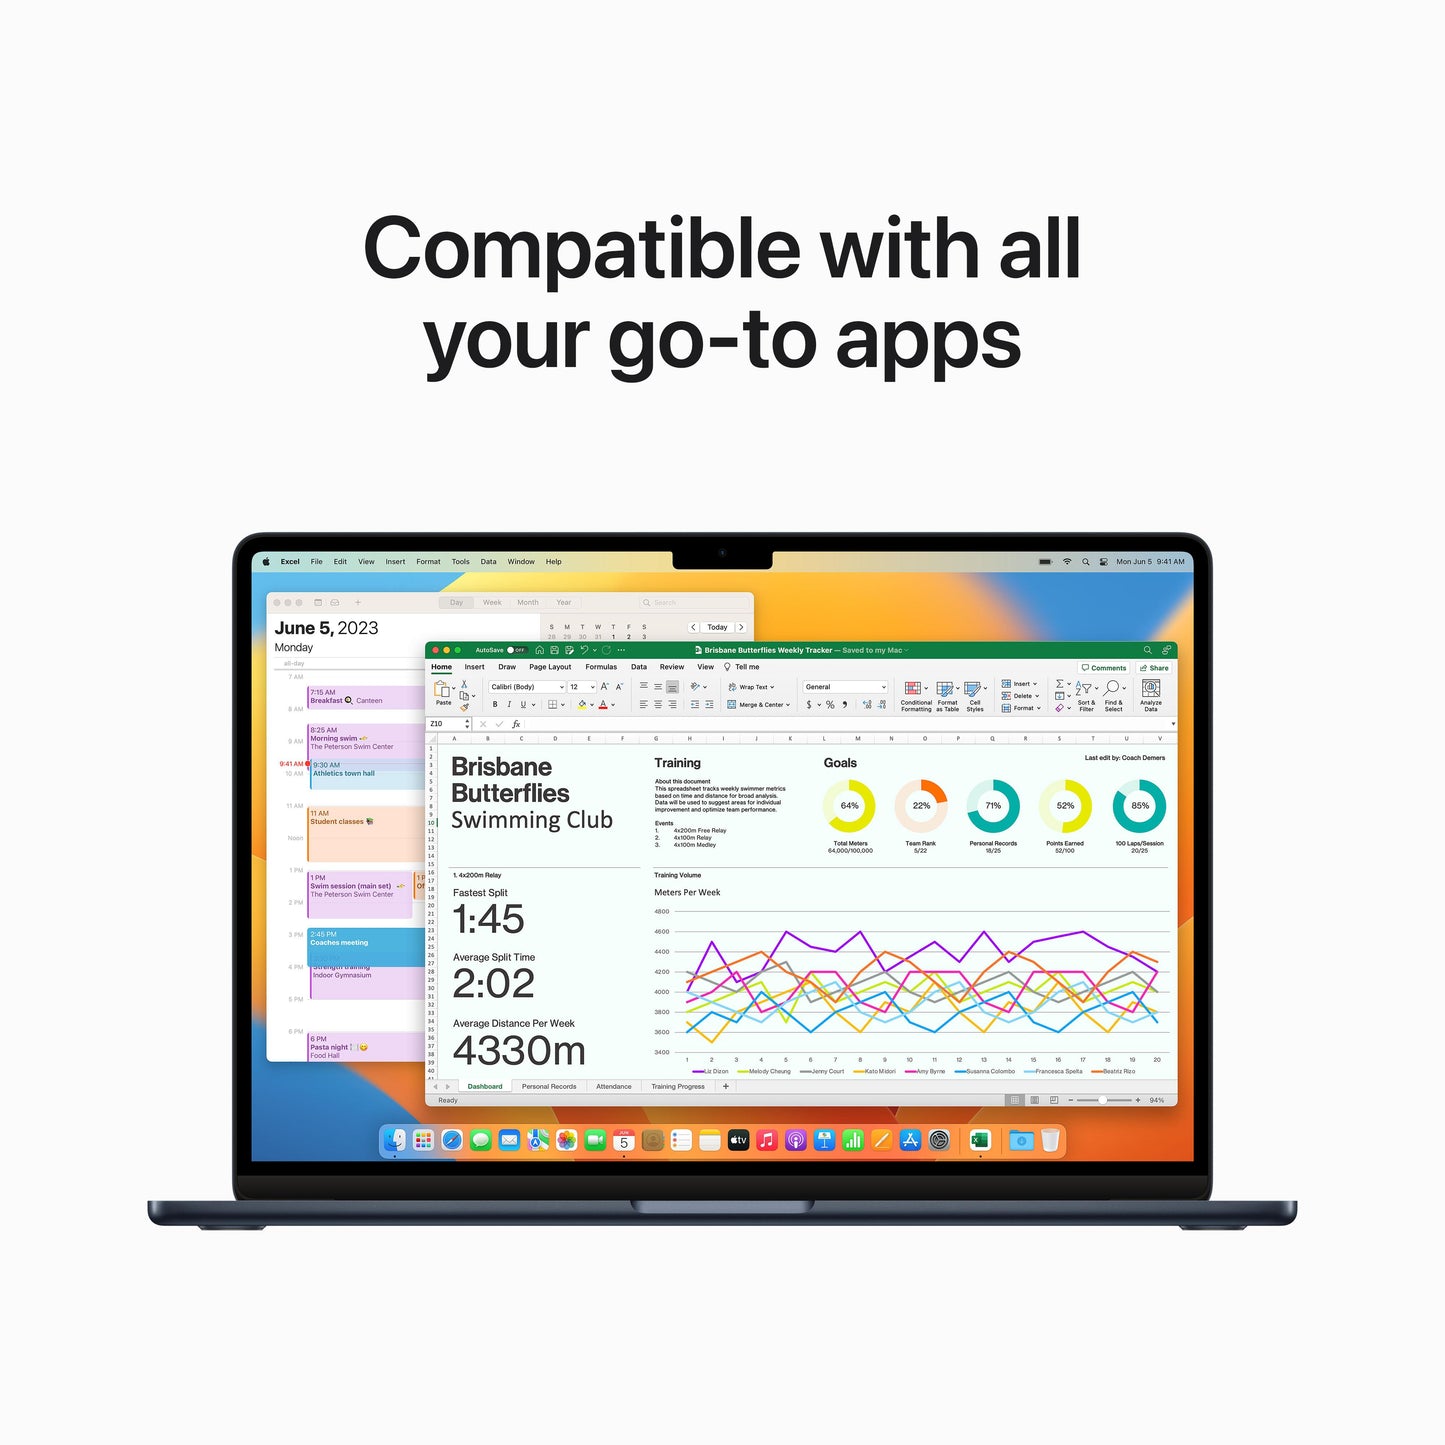 EOL MacBook Air 15 pouces: Puce Apple M2 avec CPU 8 cœurs et GPU 10 cœurs, 8 Go, 256 Go SSD - Minuit (Azerty FR)